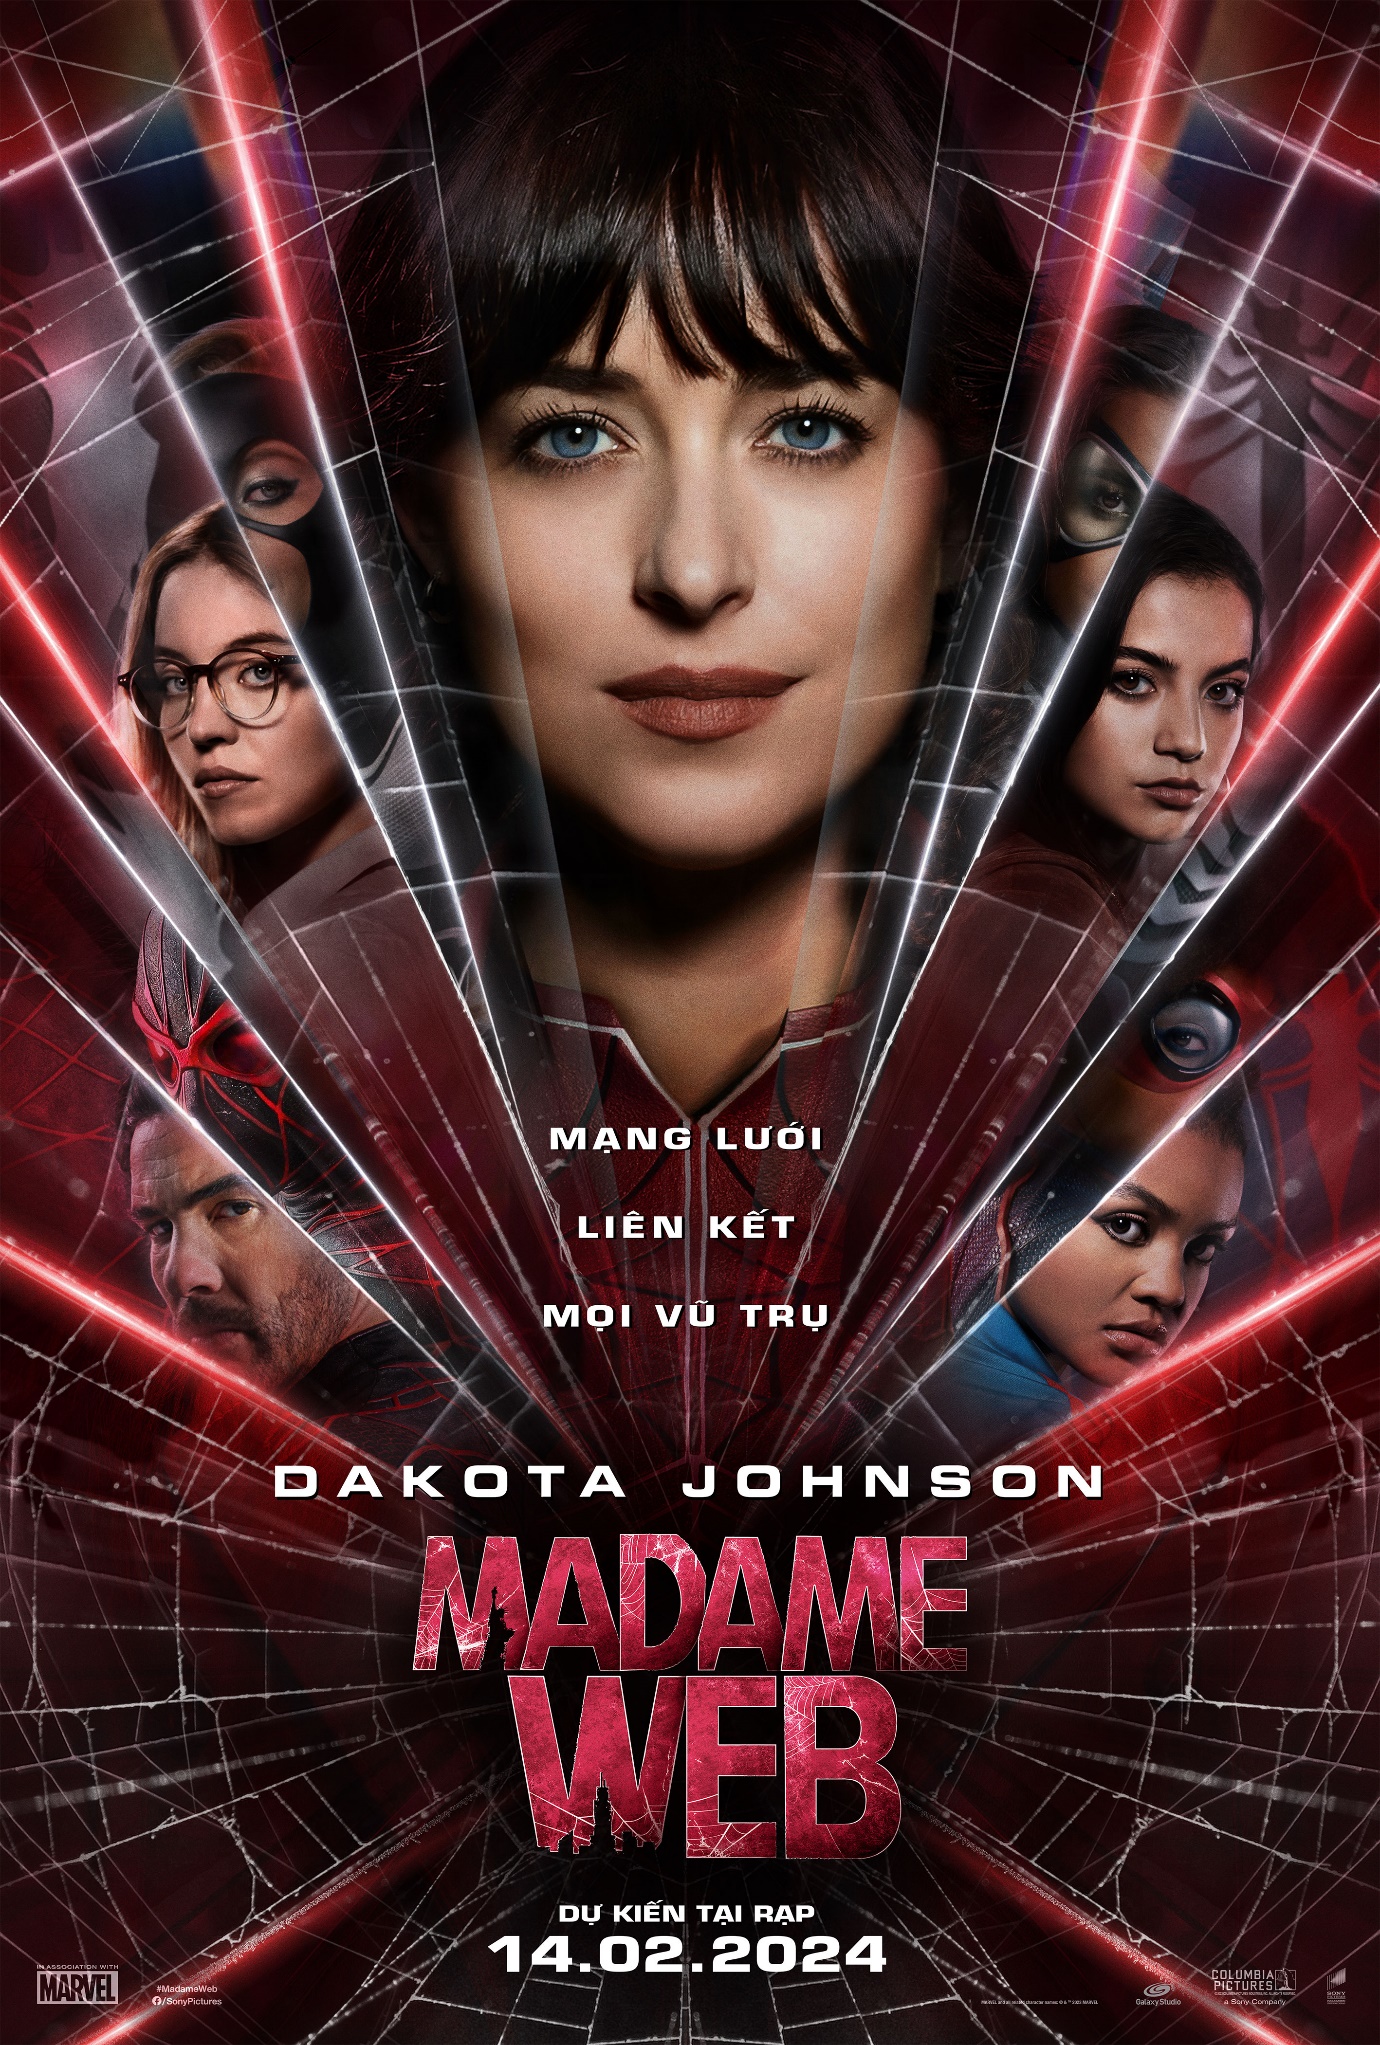 Madame Web - “Người nhện” bá đạo bậc nhất đa vũ trụ